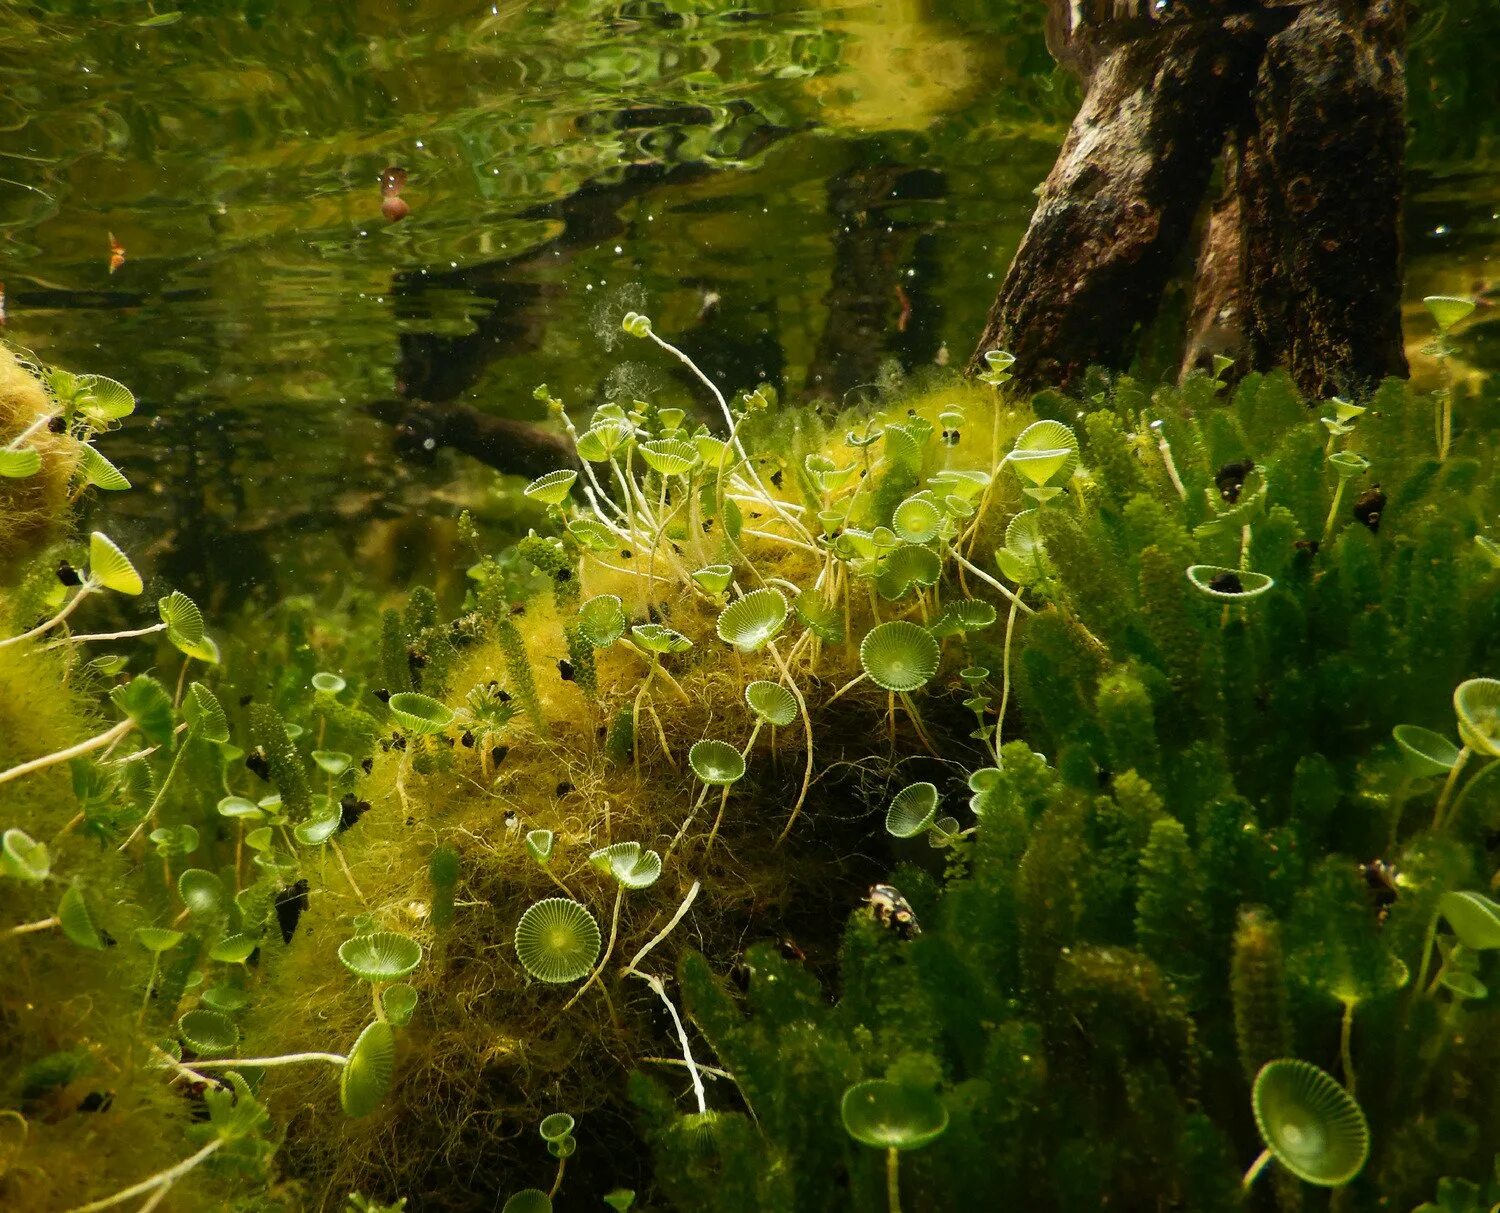 Ацетабулярия водоросль. Одноклеточная водоросль ацетабулярия. Ацетабулярия зеленые водоросли. Зеленые Сифоновые водоросли.